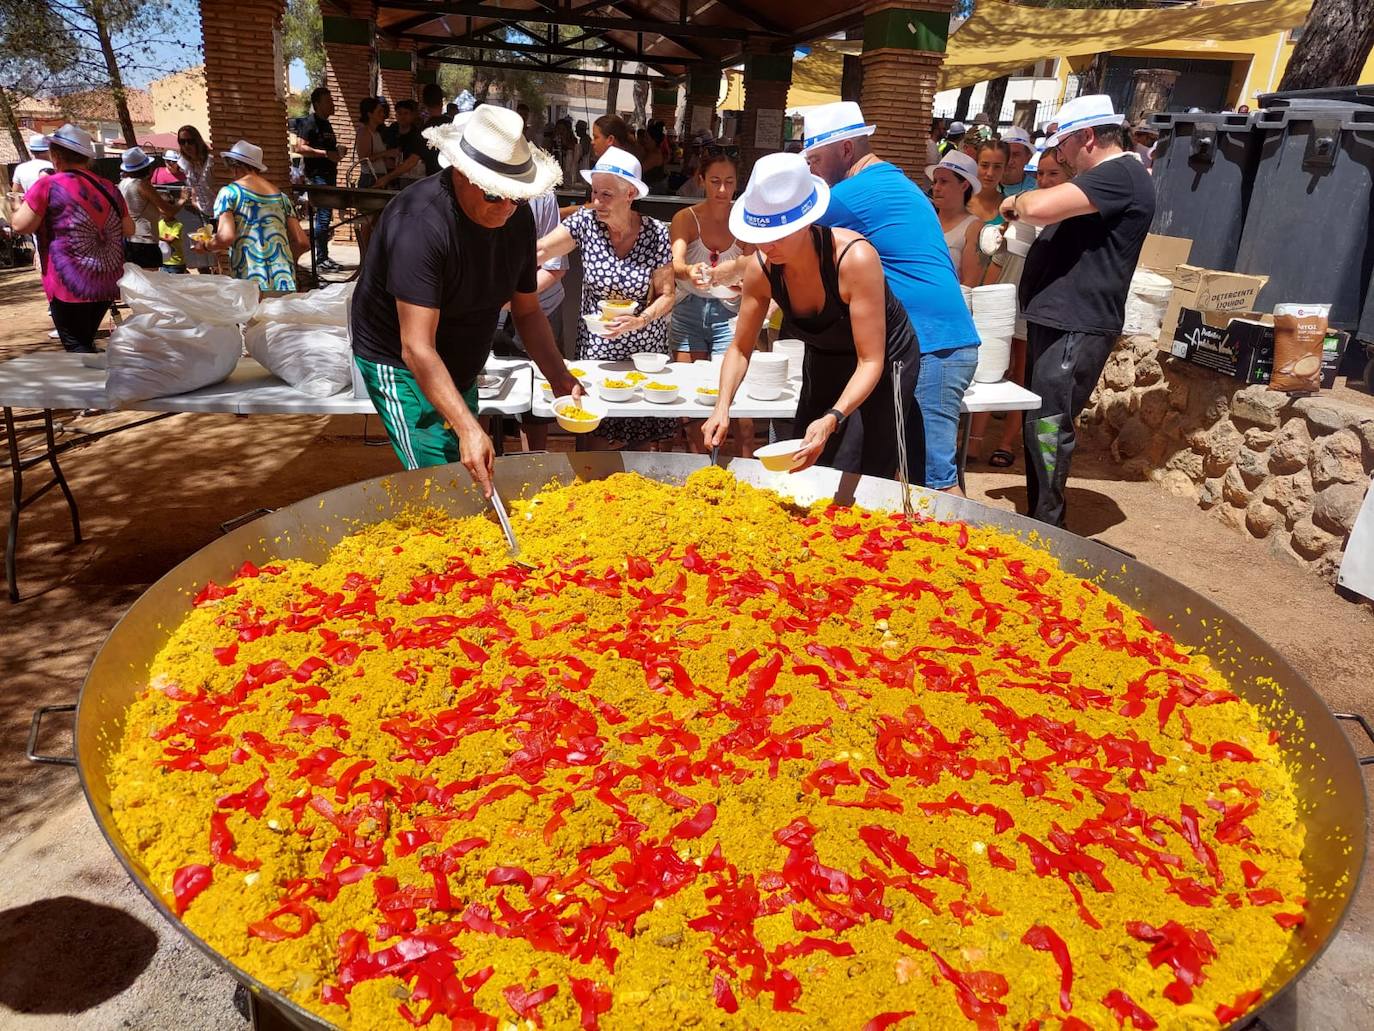 La paella popular en Parque de los Pinos, uno de los encuentros más esperados de las fiestas de Huétor Vega.